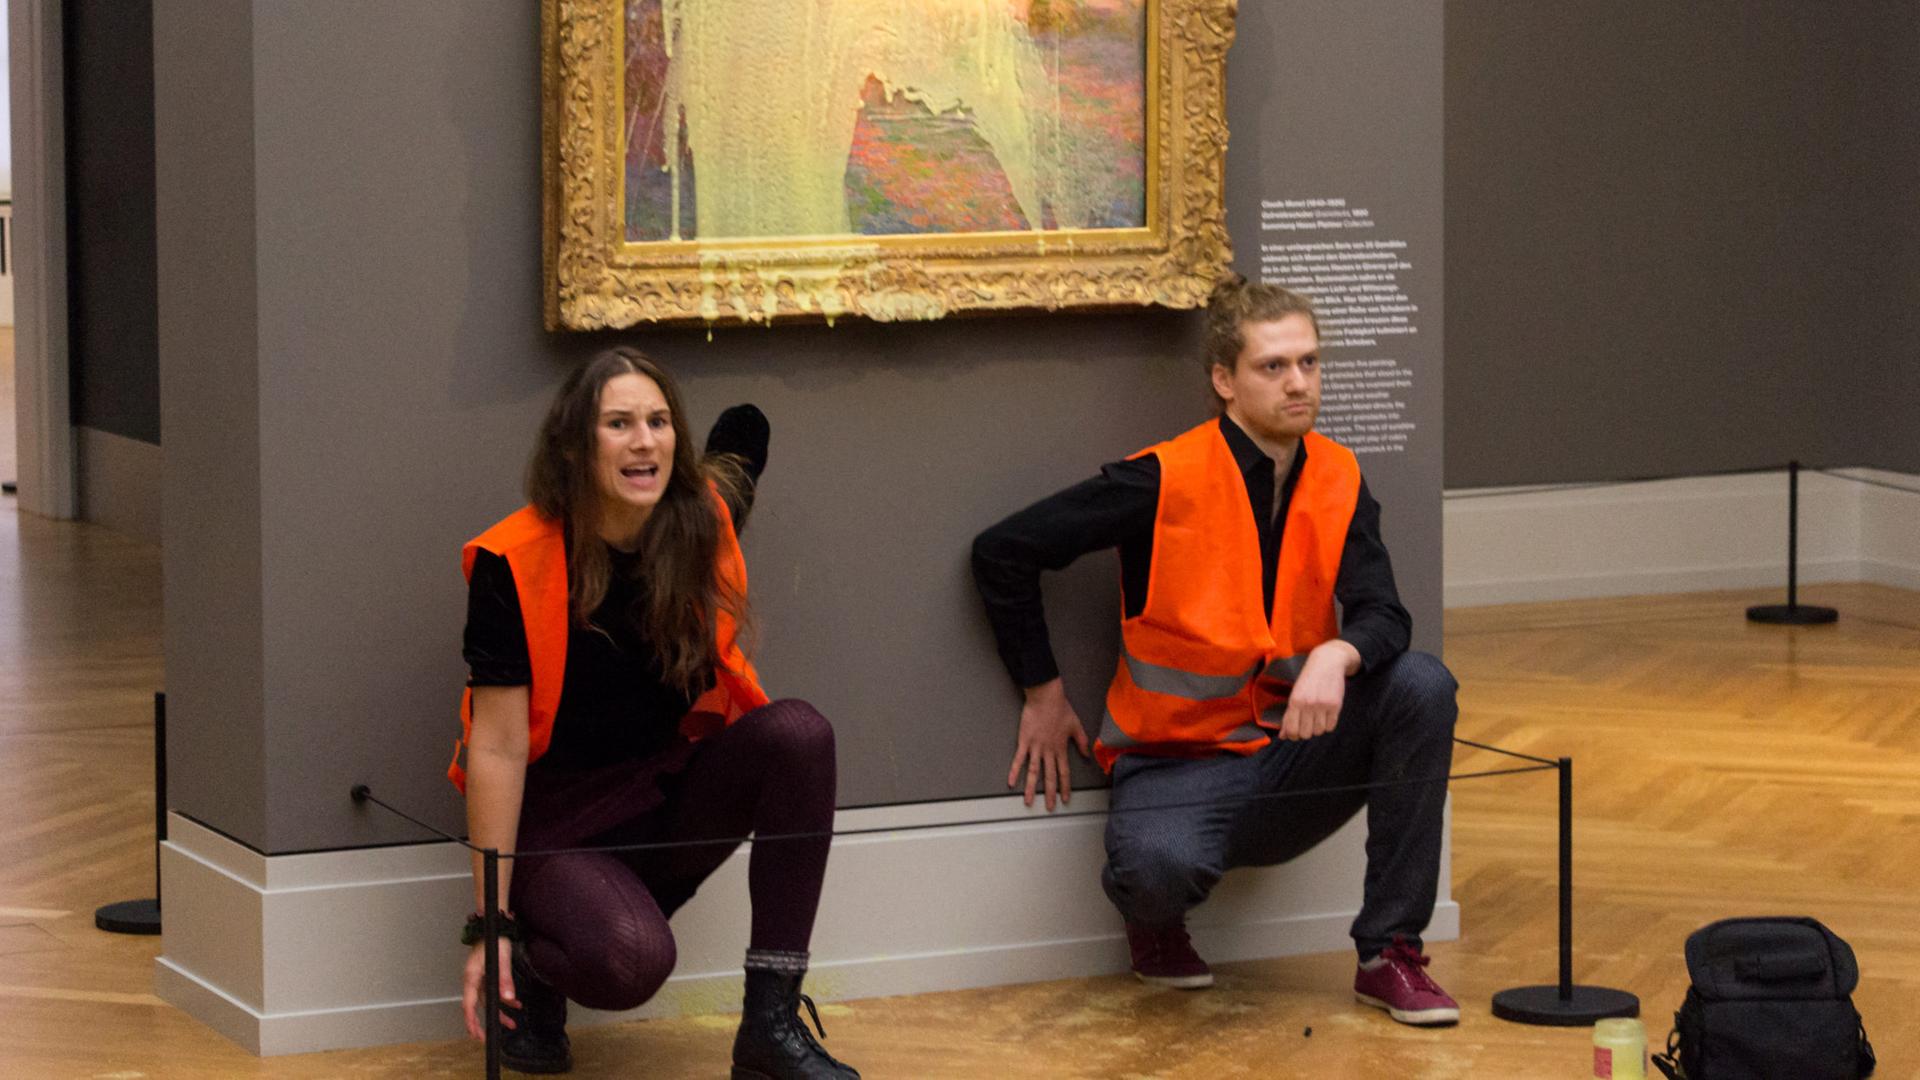 Klimaaktivisten der Gruppe "Letzte Generation" haben sich unter dem Monet-Gemälde, das sie mit Kartoffelbrei beworfen haben, festgeklebt